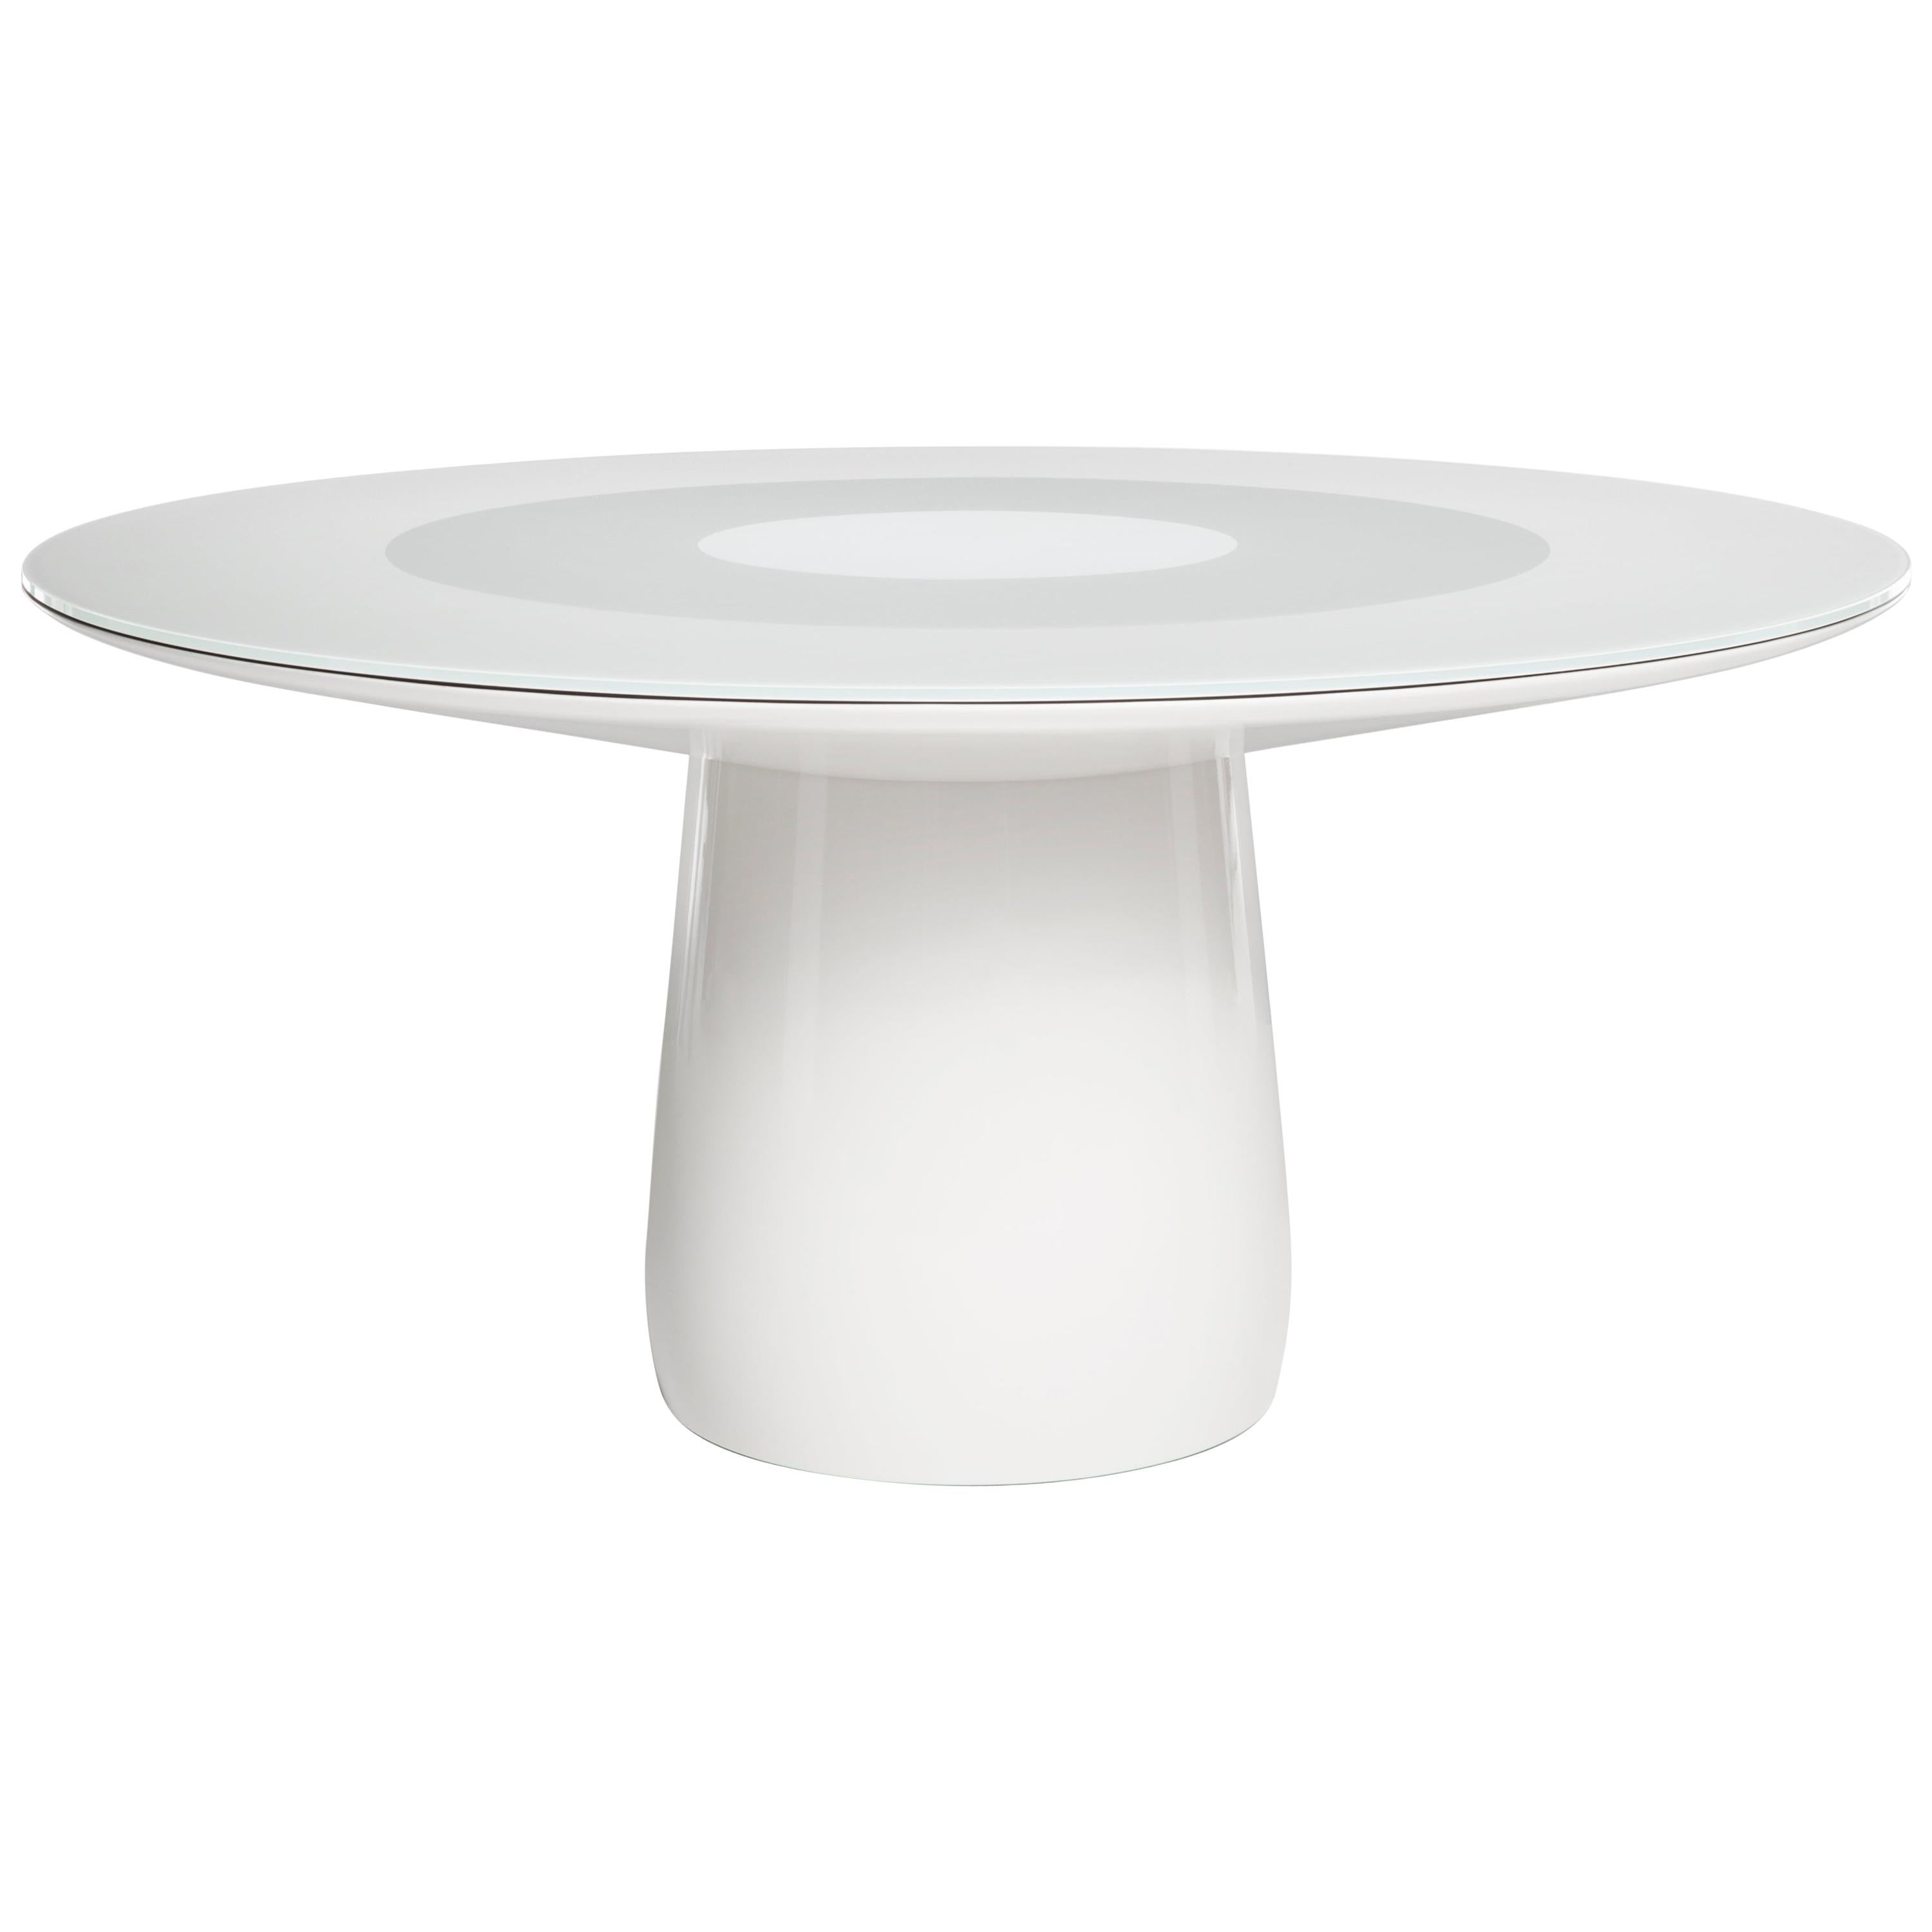 Baleri Italia Roundel Table, White Lacquer and Glass Top, Claesson Koivisto Rune